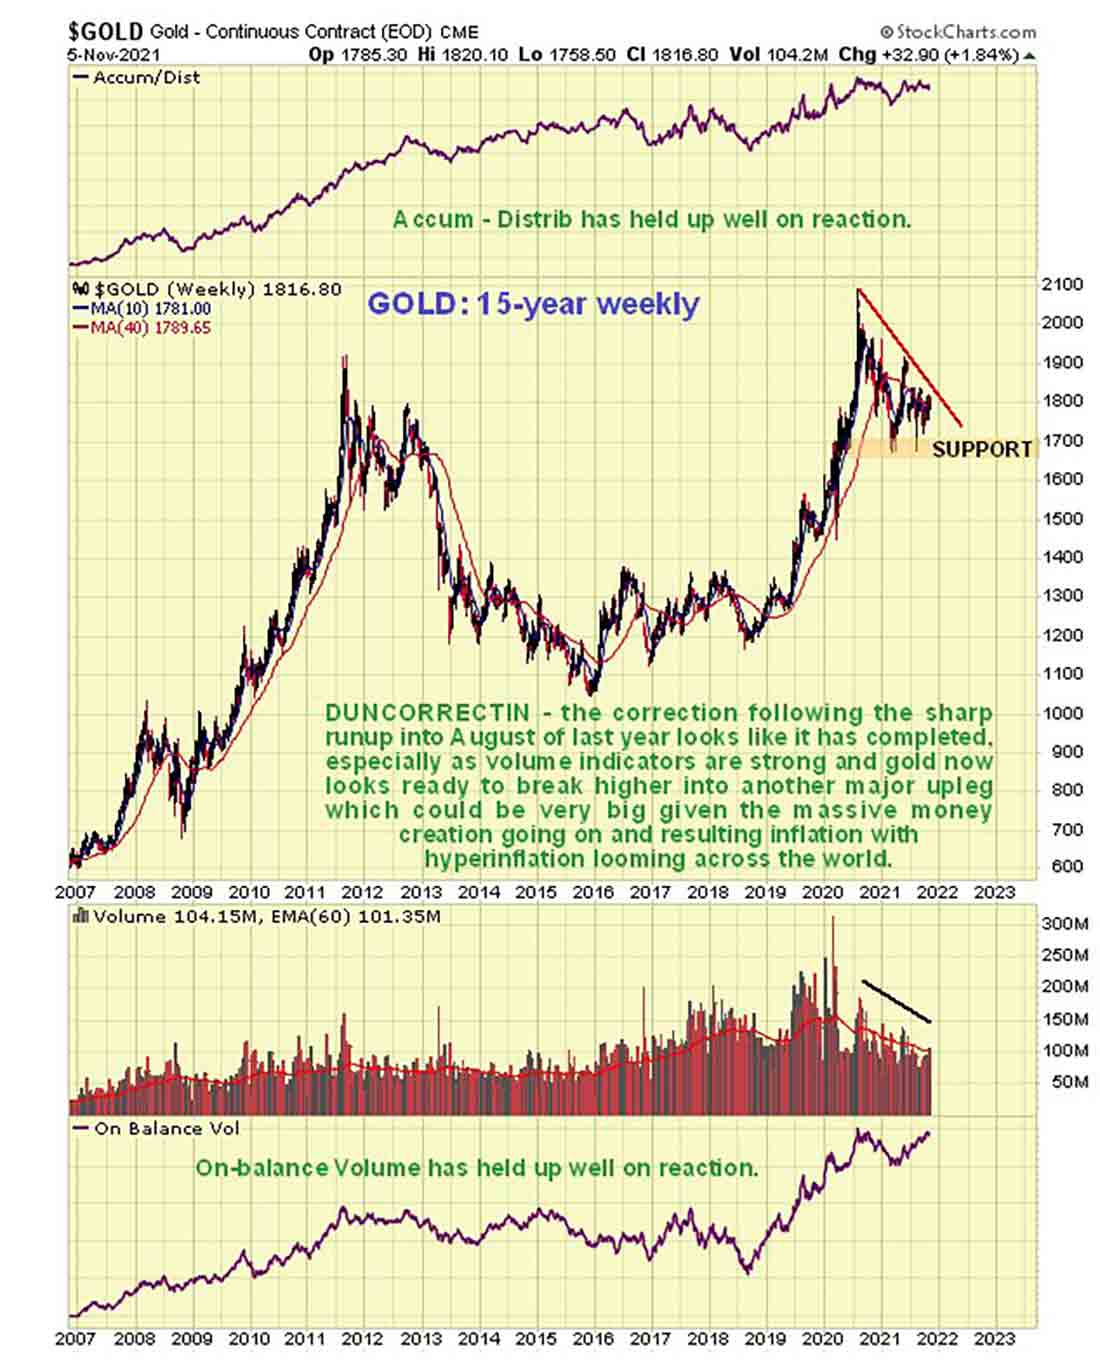 пробой цены золота и периоды коррекции на 15-летнем графике